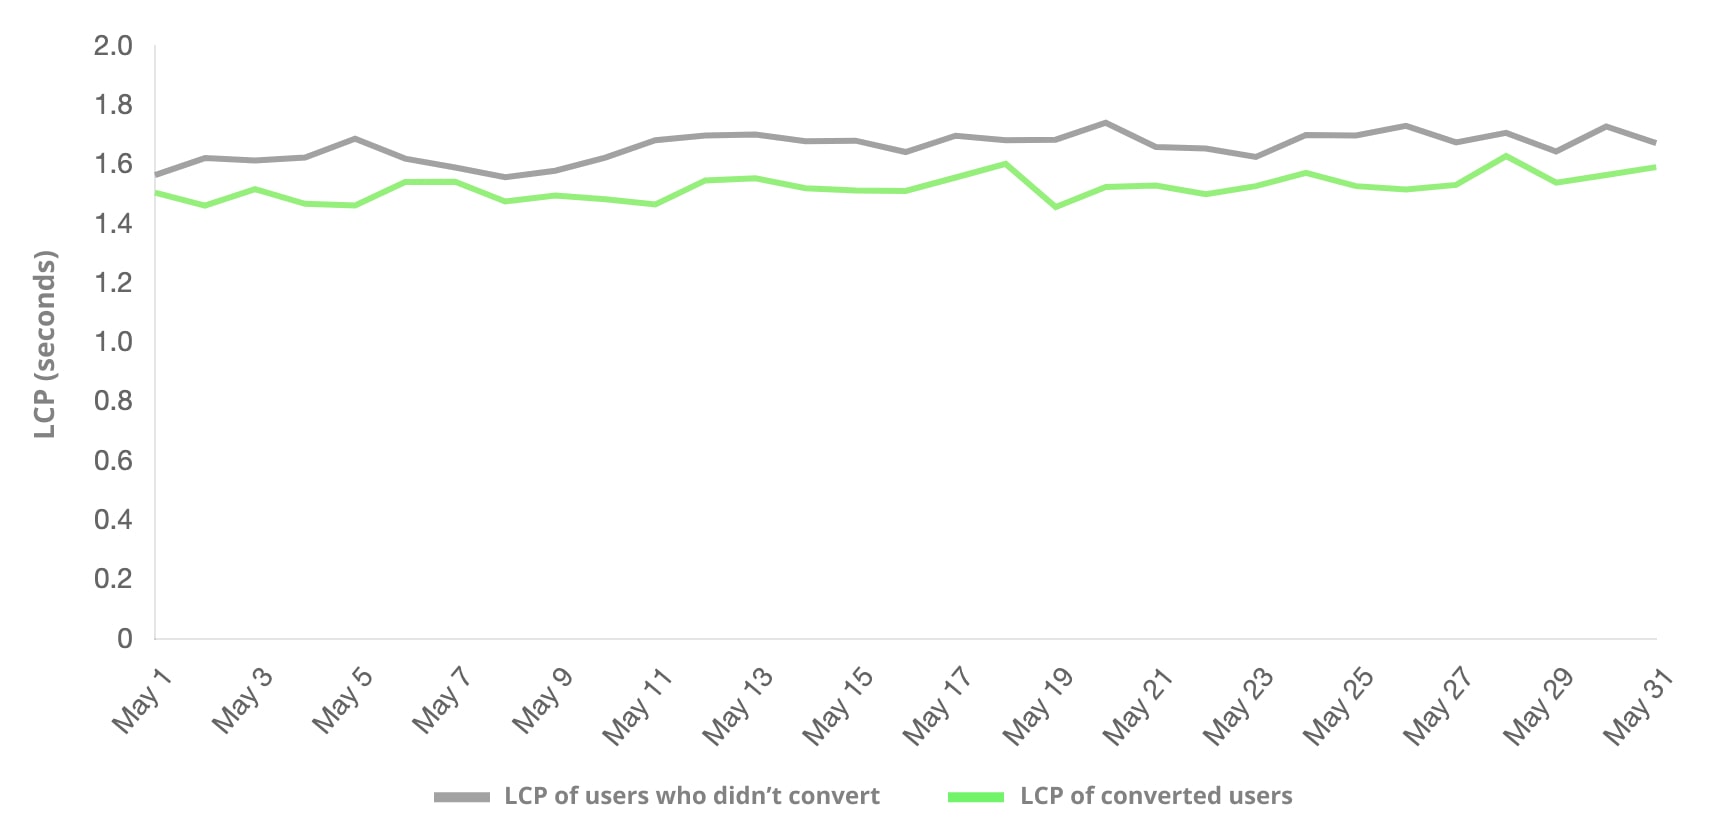 एलसीपी से खरीदारी न करने वाले लोगों और ग्राहक में बदलने वाले उपयोगकर्ताओं की तुलना. ज़्यादा बार ग्राहक में बदलने वाले उपयोगकर्ताओं के ग्रुप का एलसीपी कम था.